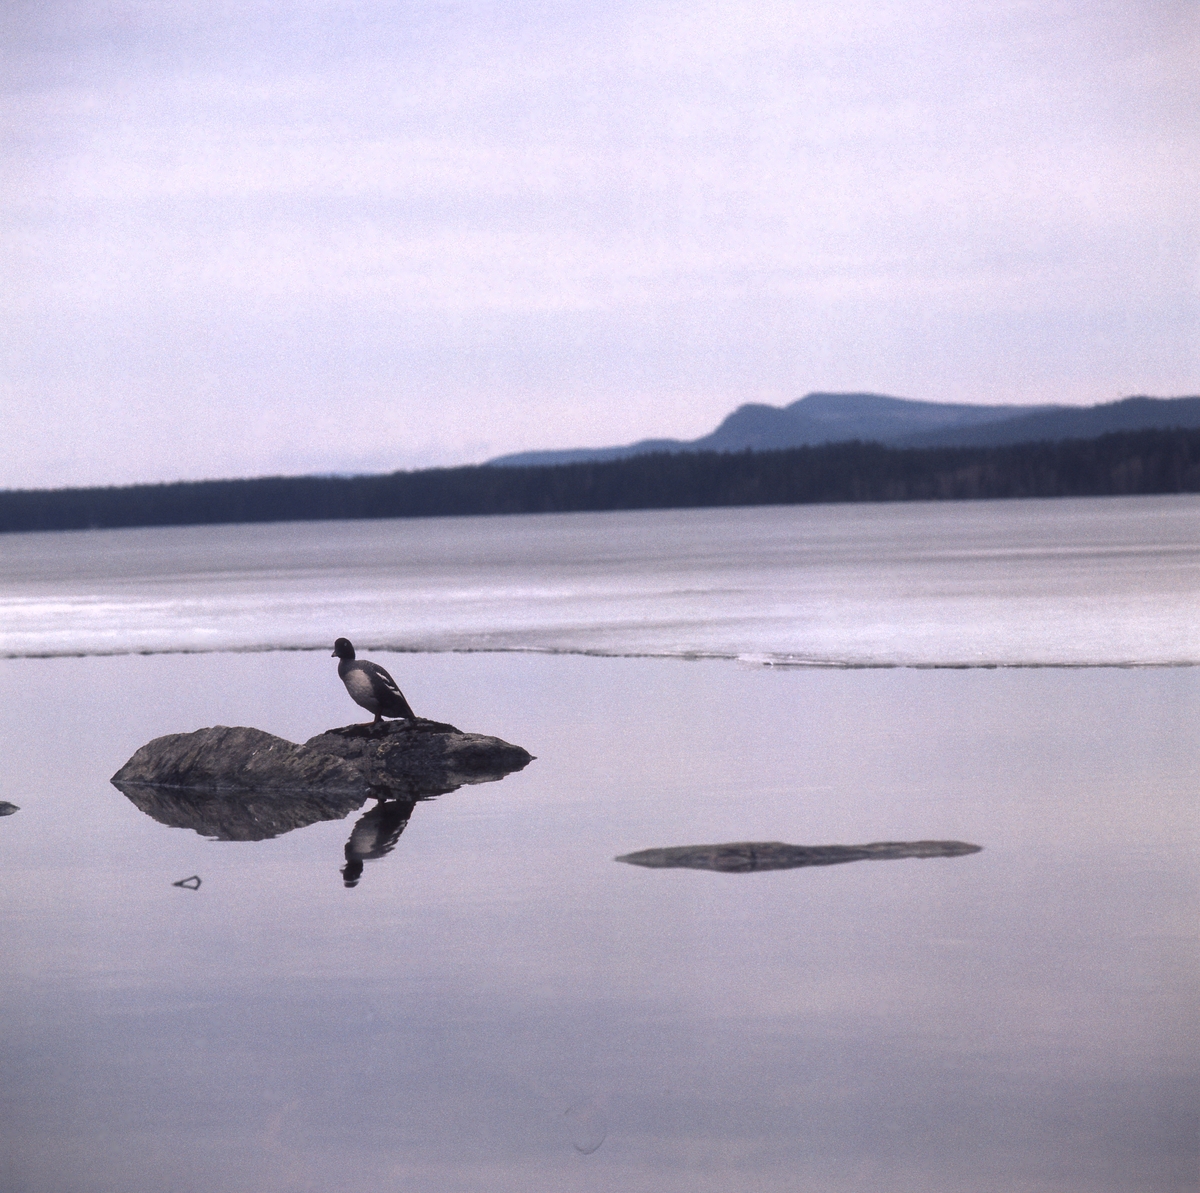 En knipa sitter på en sten i vattnet i närheten av en iskant. I bakgrunden syns berg och skog.